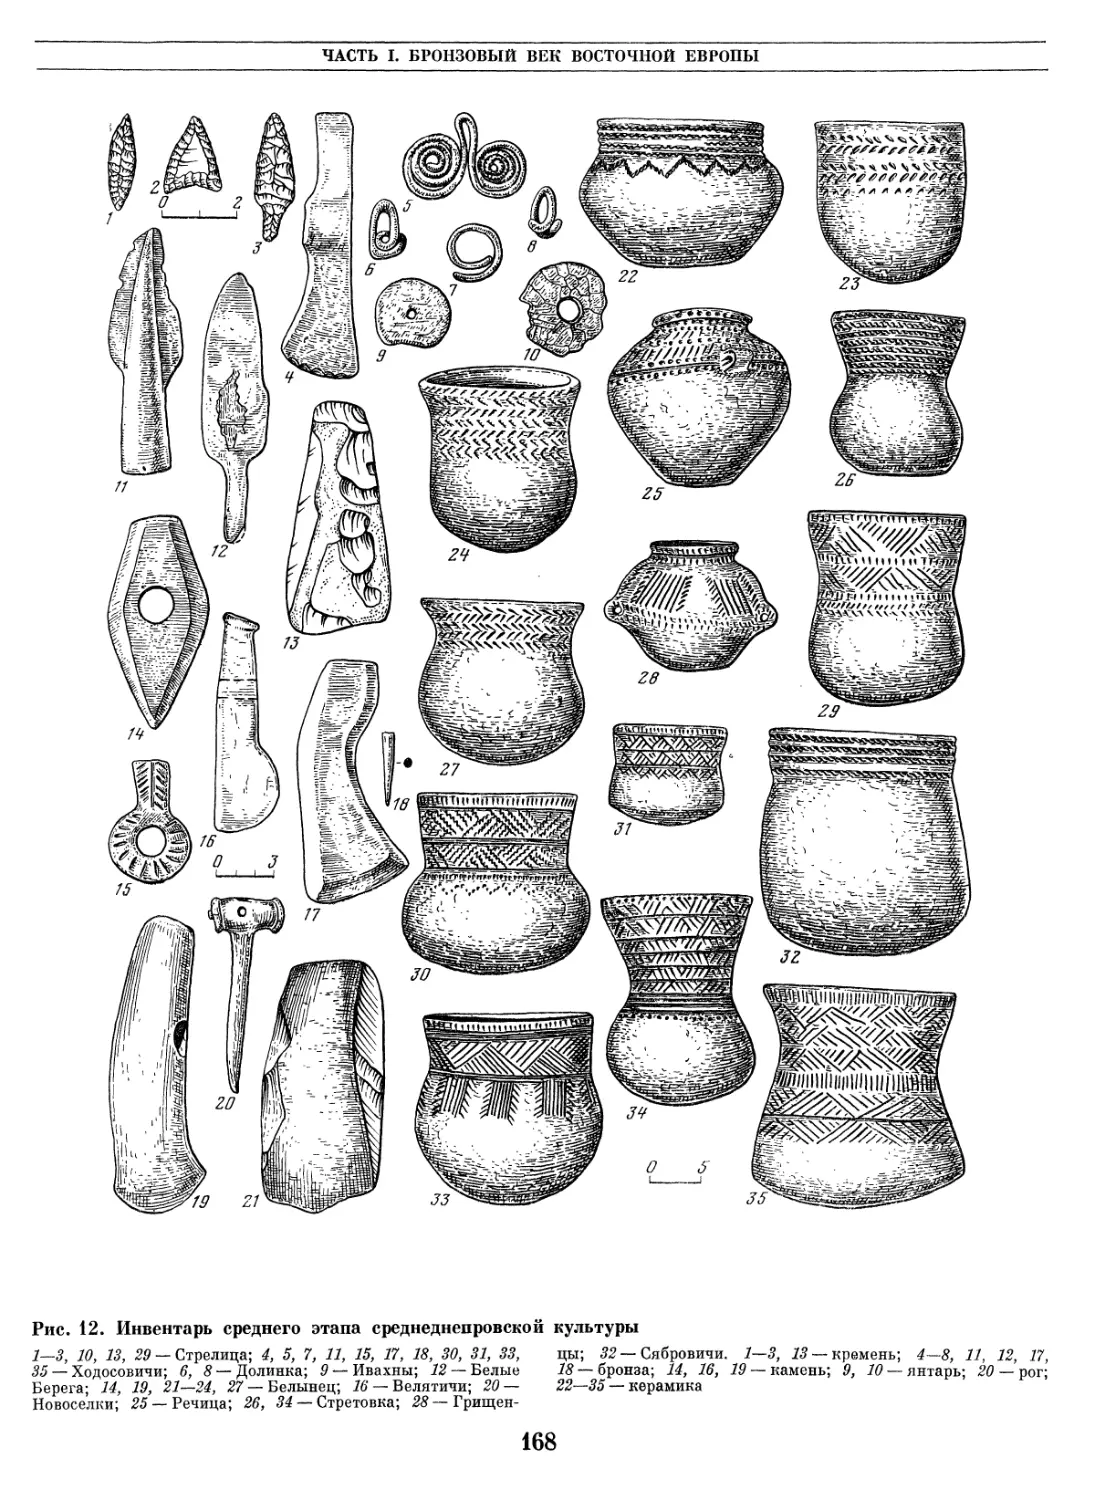 Городецкая археологическая культура керамика